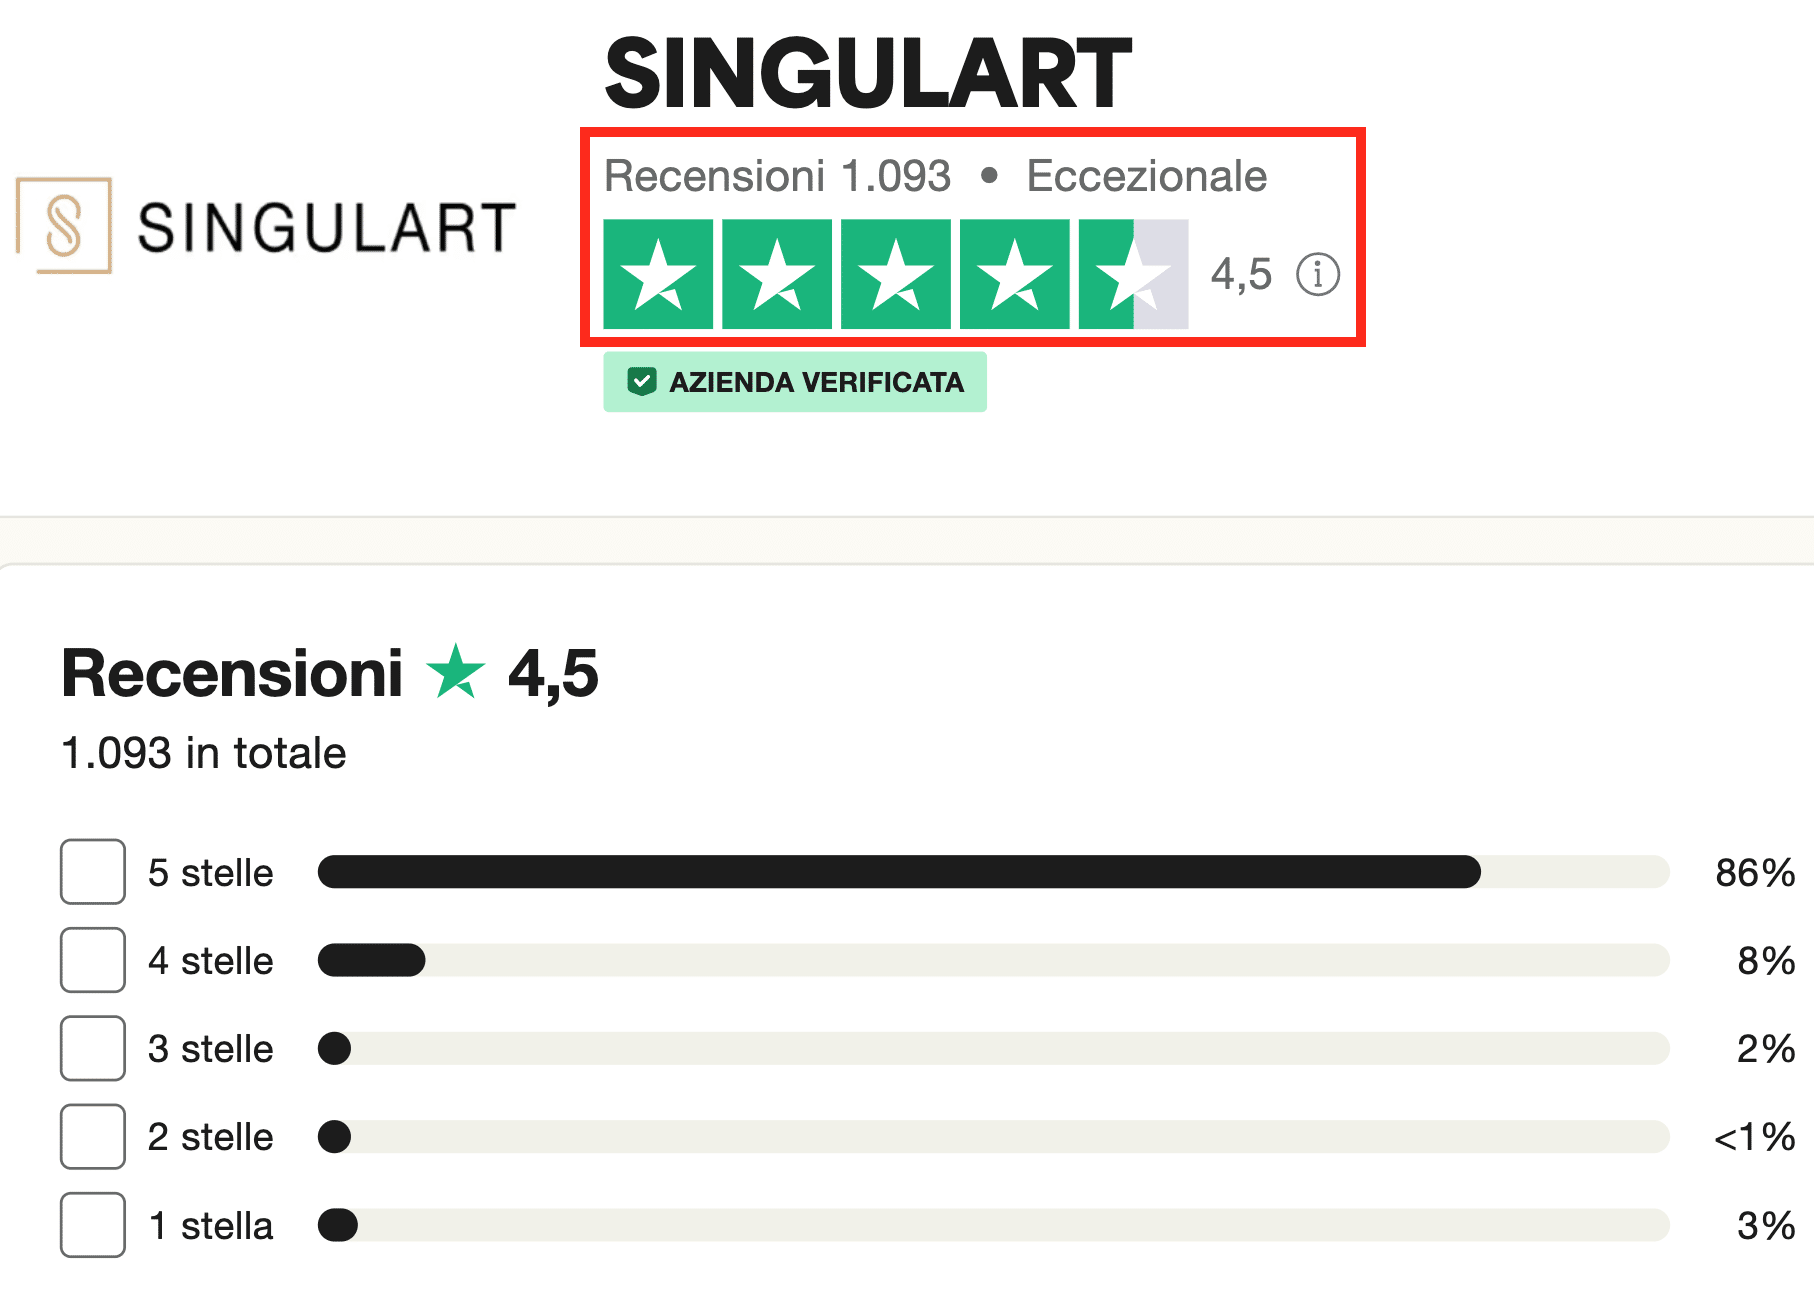 Singulart ha molte recensioni a 5 stelle e le opinioni sono ottime